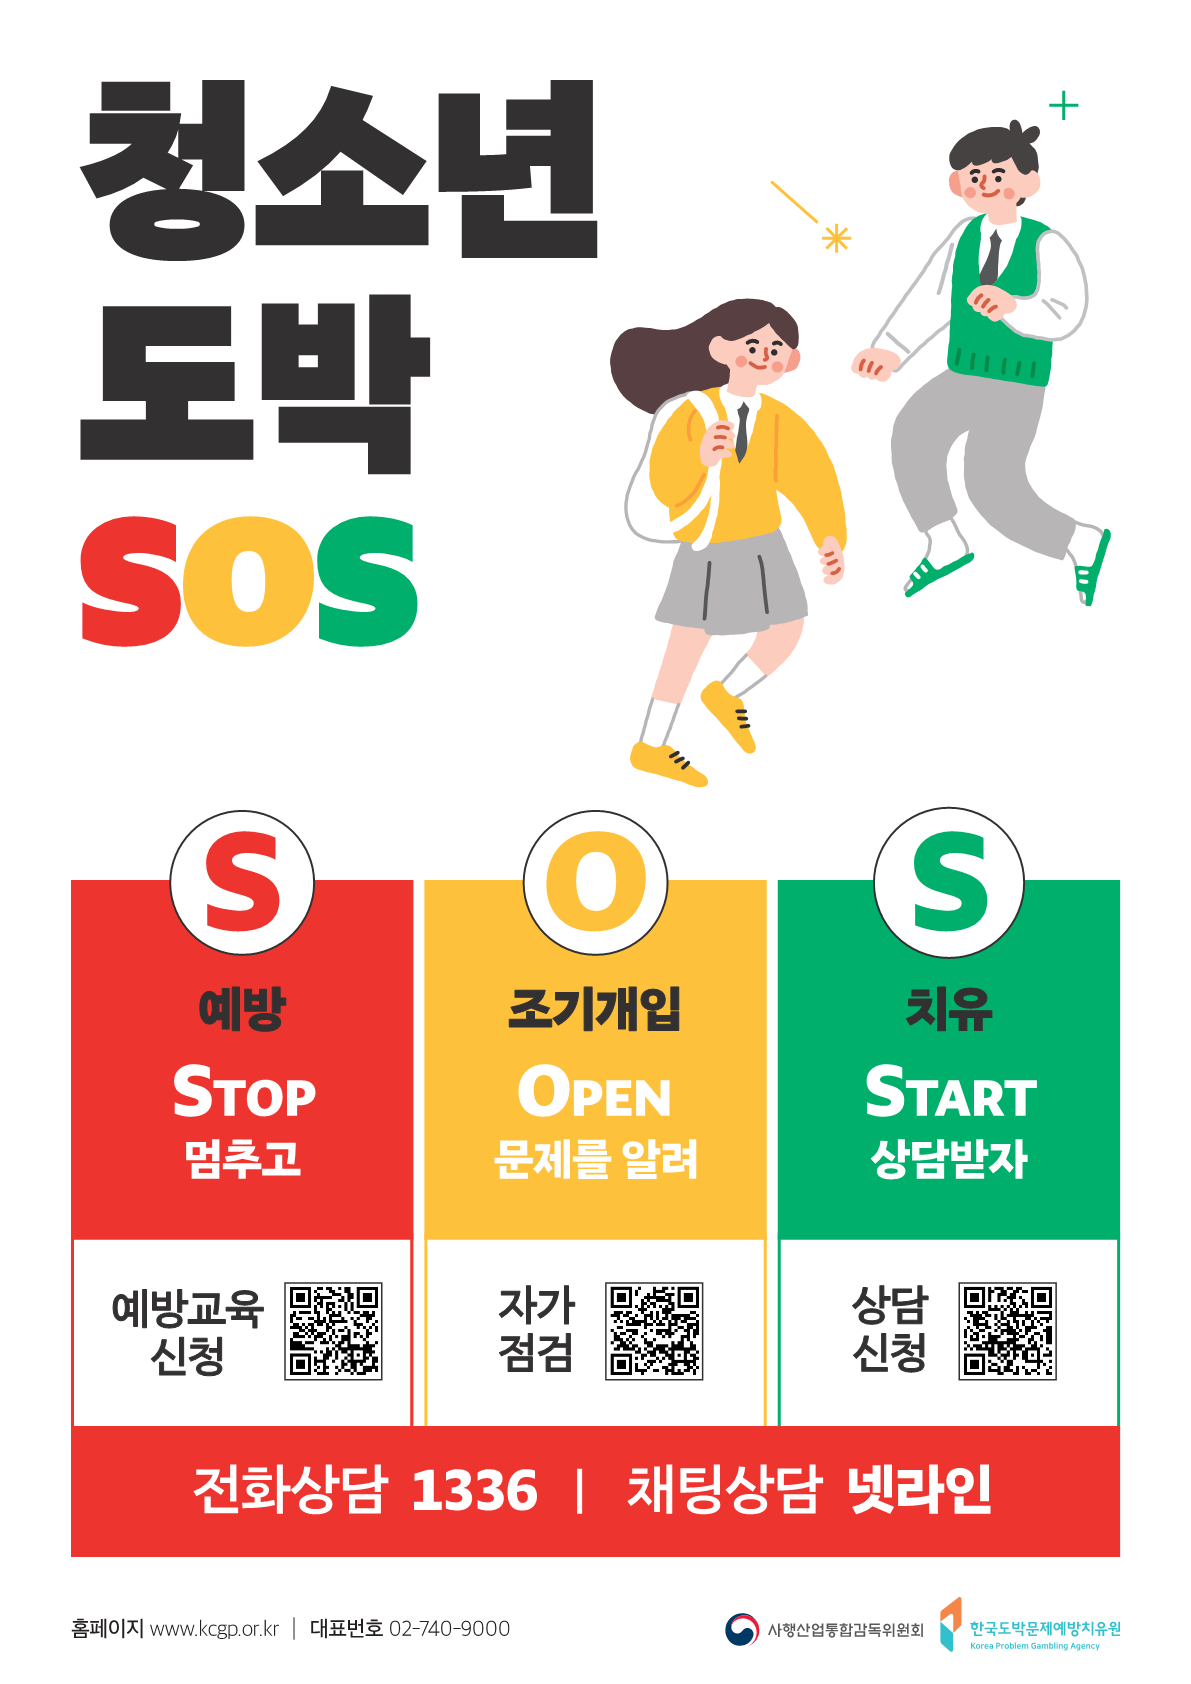 한국도박문제예방치유원「청소년 도박 SOS」사업 안내